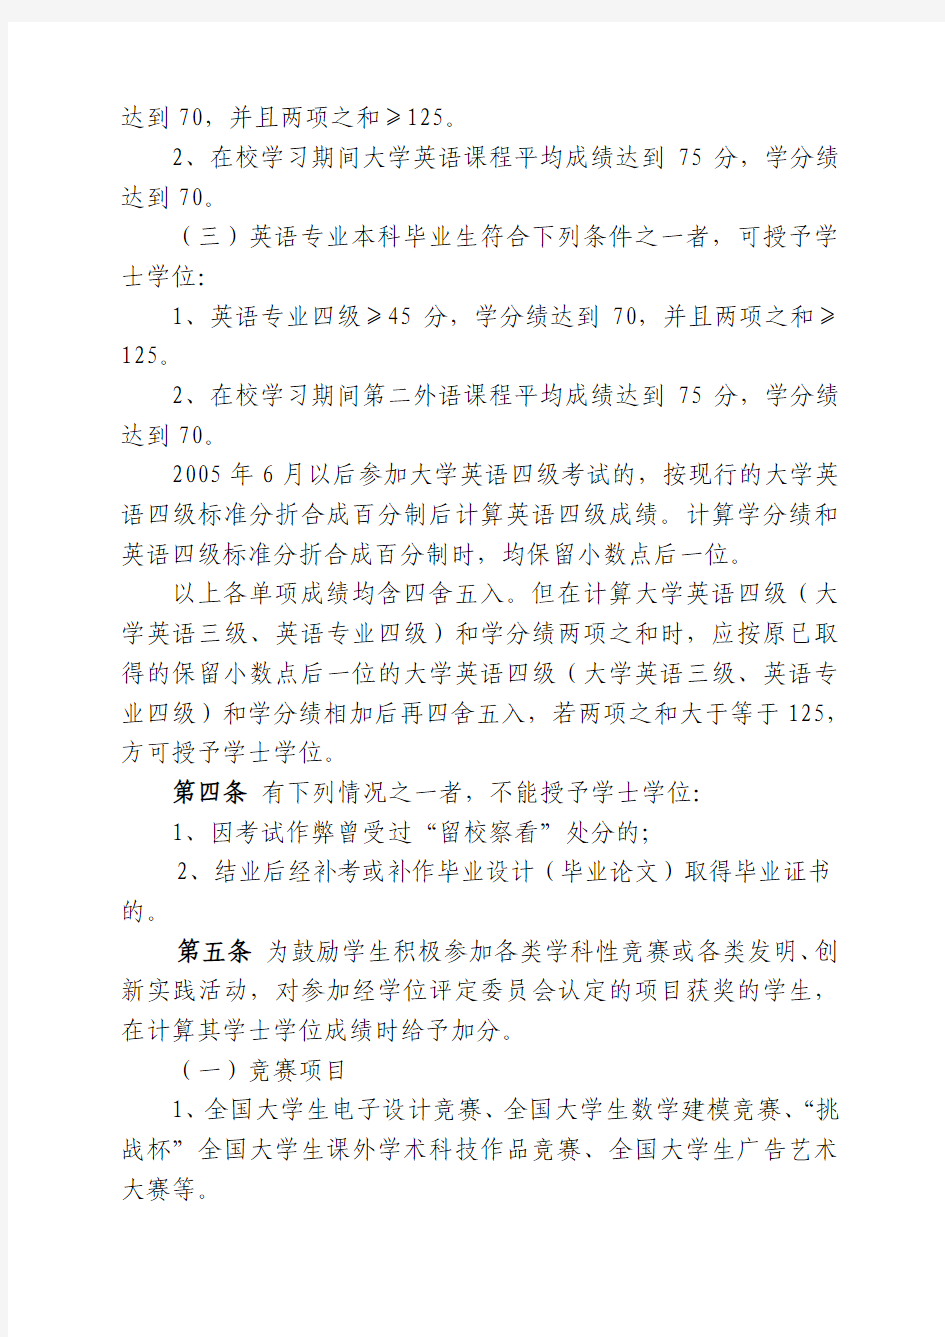 桂林电子科技大学学士学位授予实施细则(暂行)